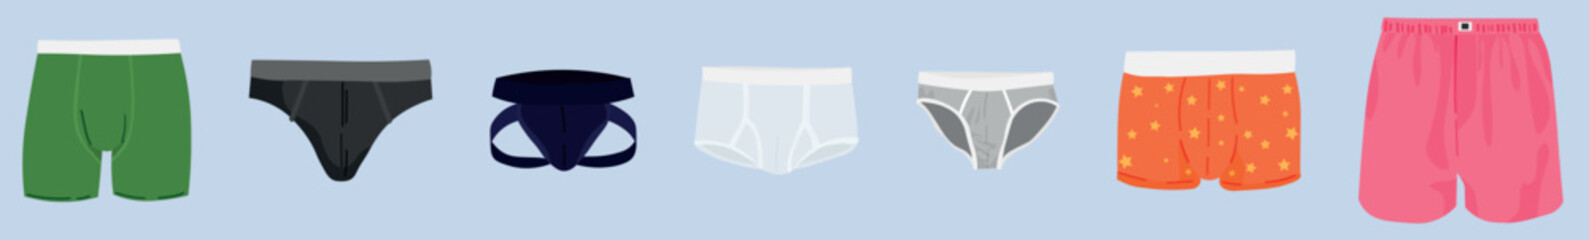 Set of man's underwear on grey background